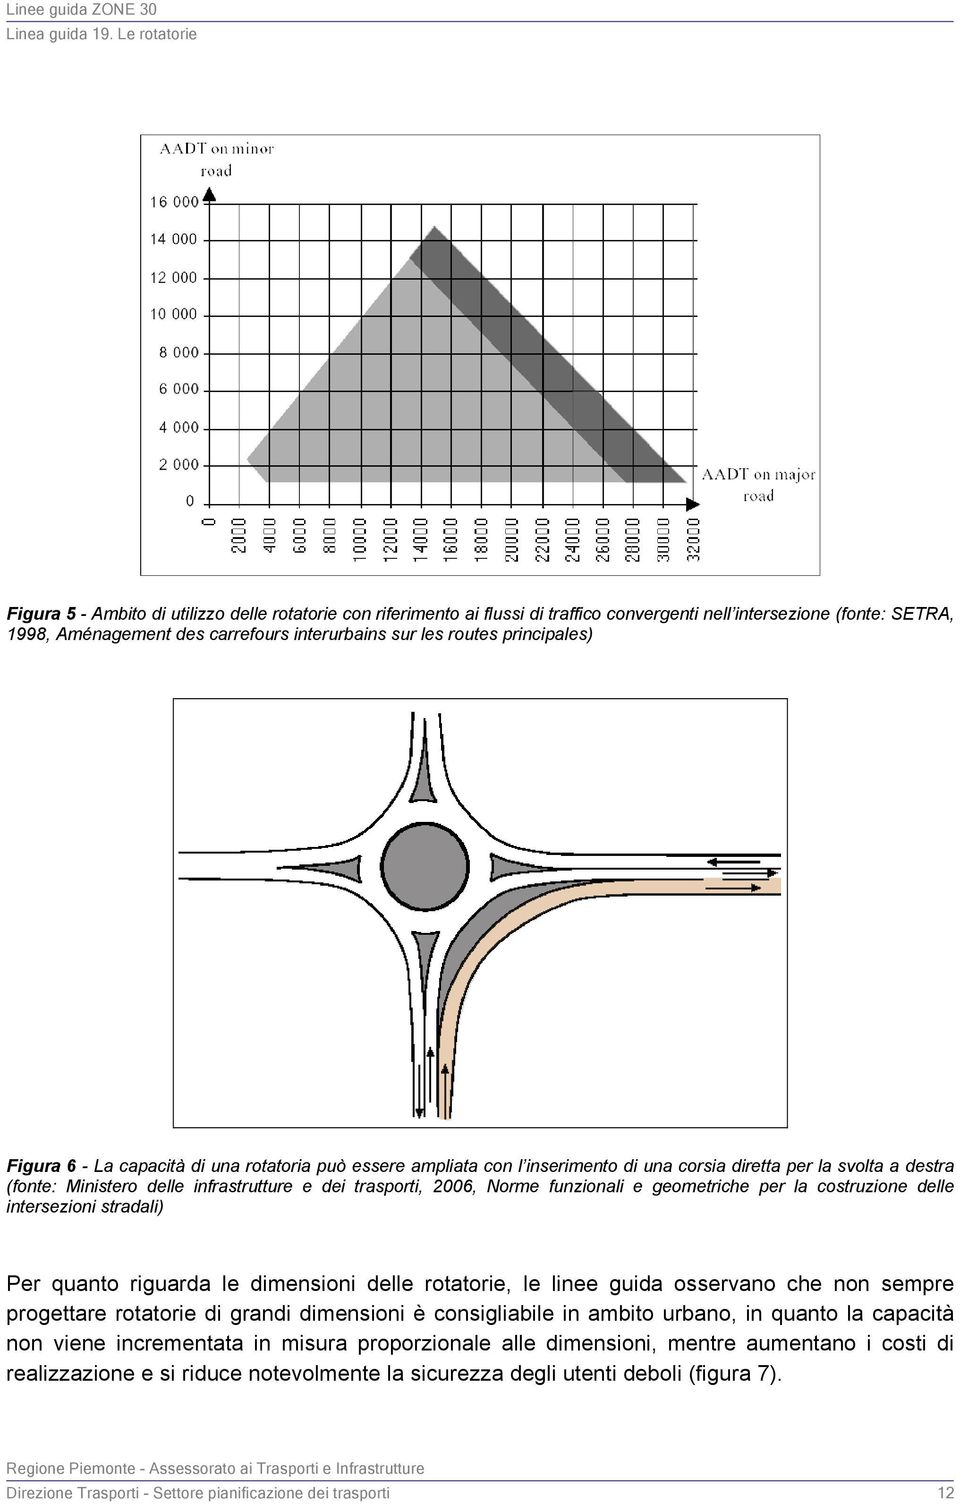 Norme funzionali e geometriche per la costruzione delle intersezioni stradali) Per quanto riguarda le dimensioni delle rotatorie, le linee guida osservano che non sempre progettare rotatorie di